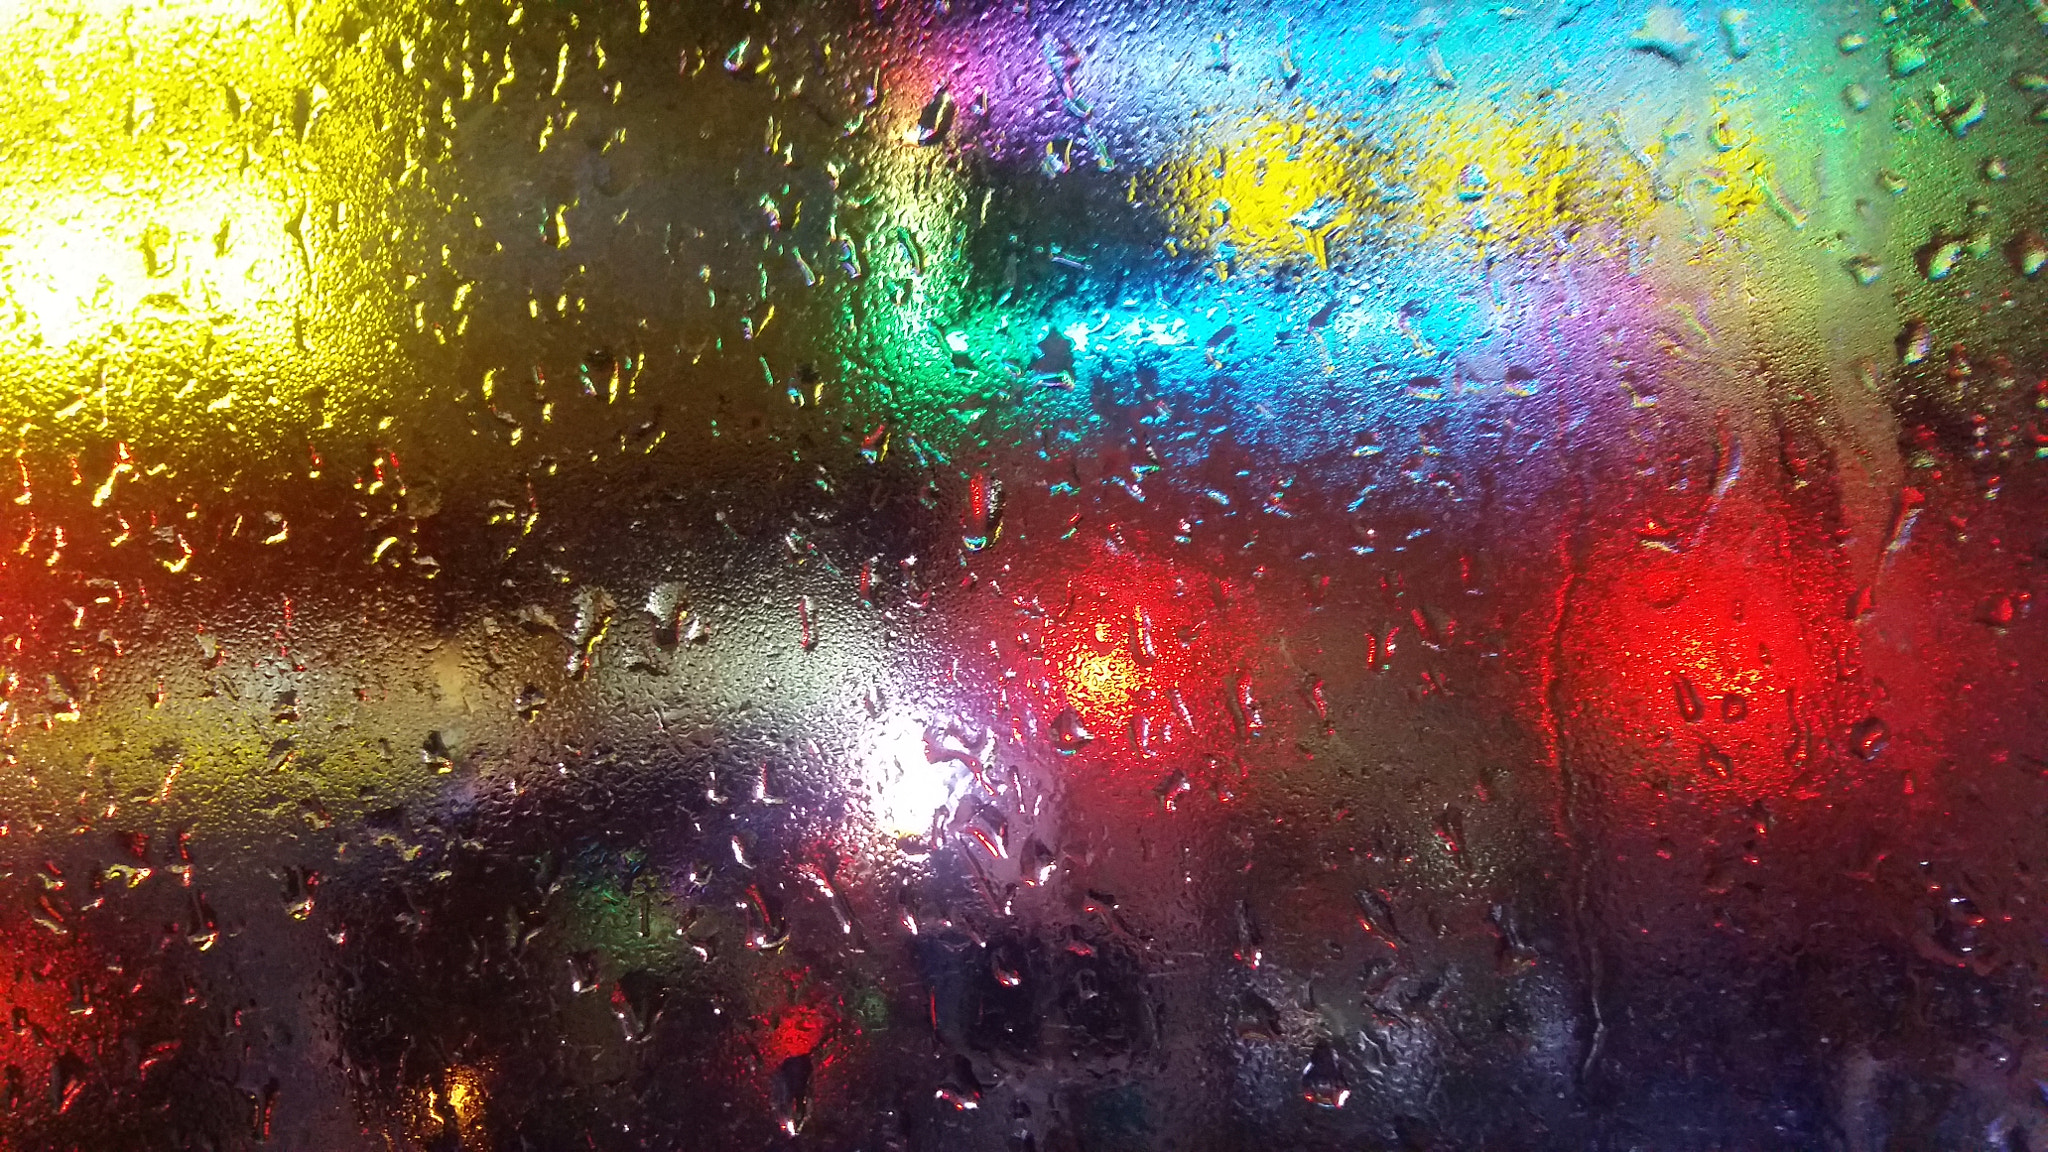 Samsung Galaxy A7 sample photo. Rain photography